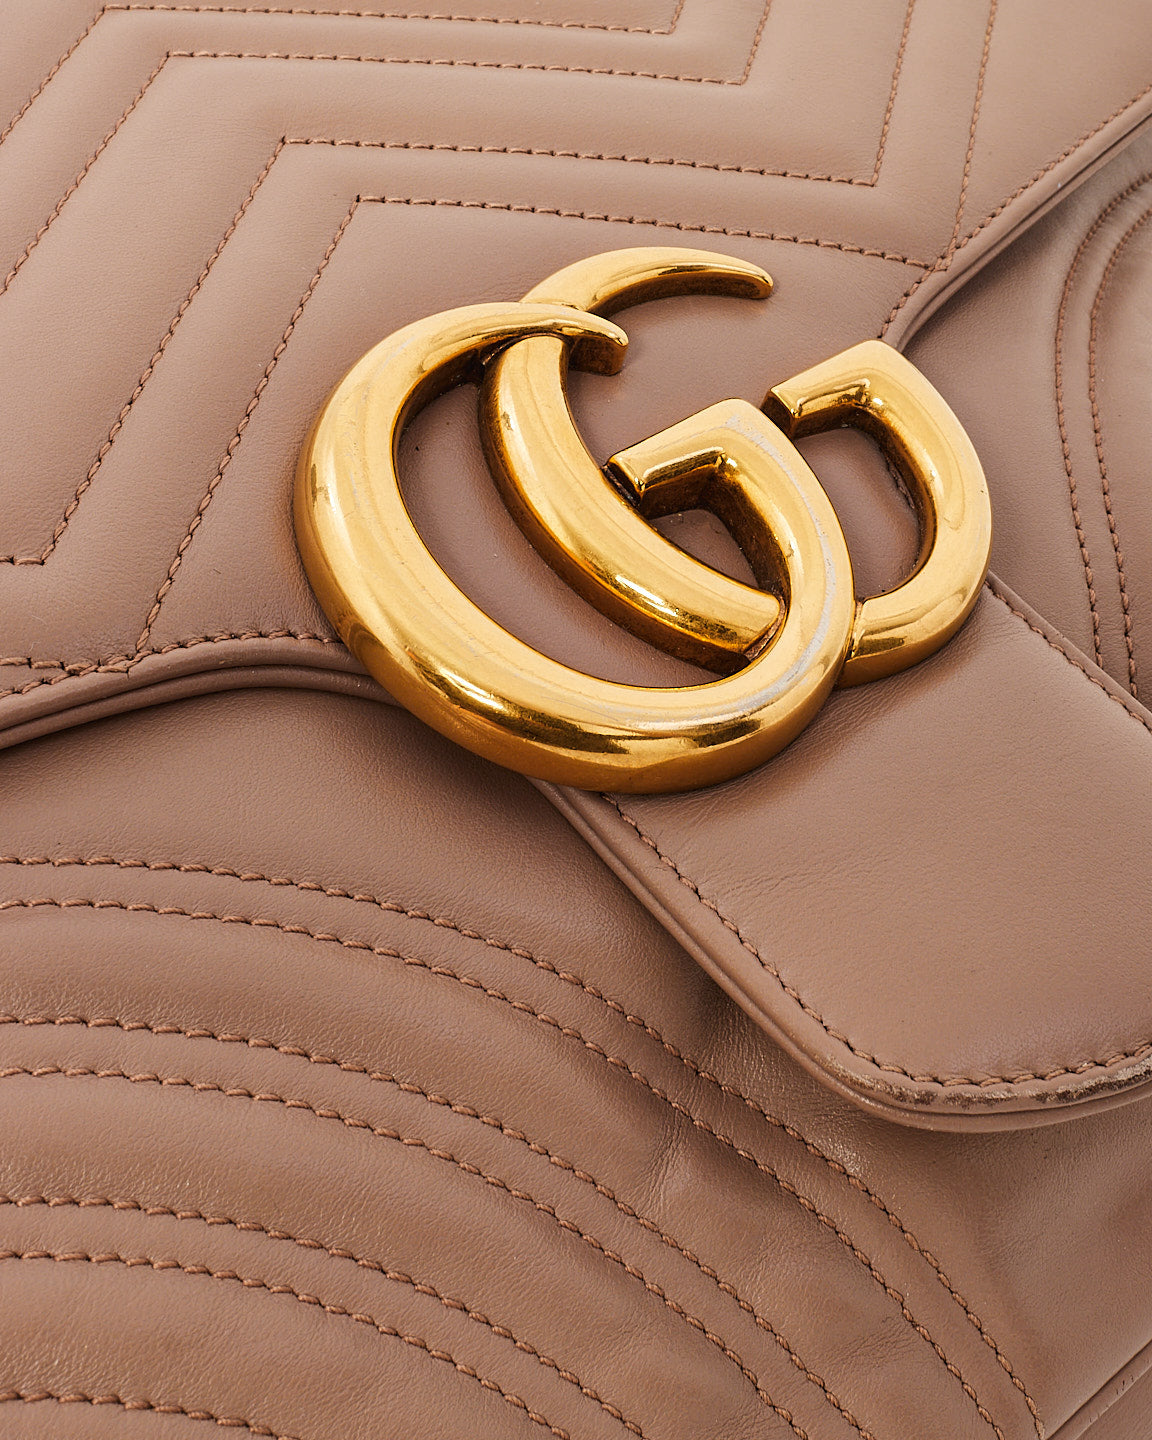 Gucci Dusty Pink Chevron Matelassé Large GG Marmont Shoulder Bag